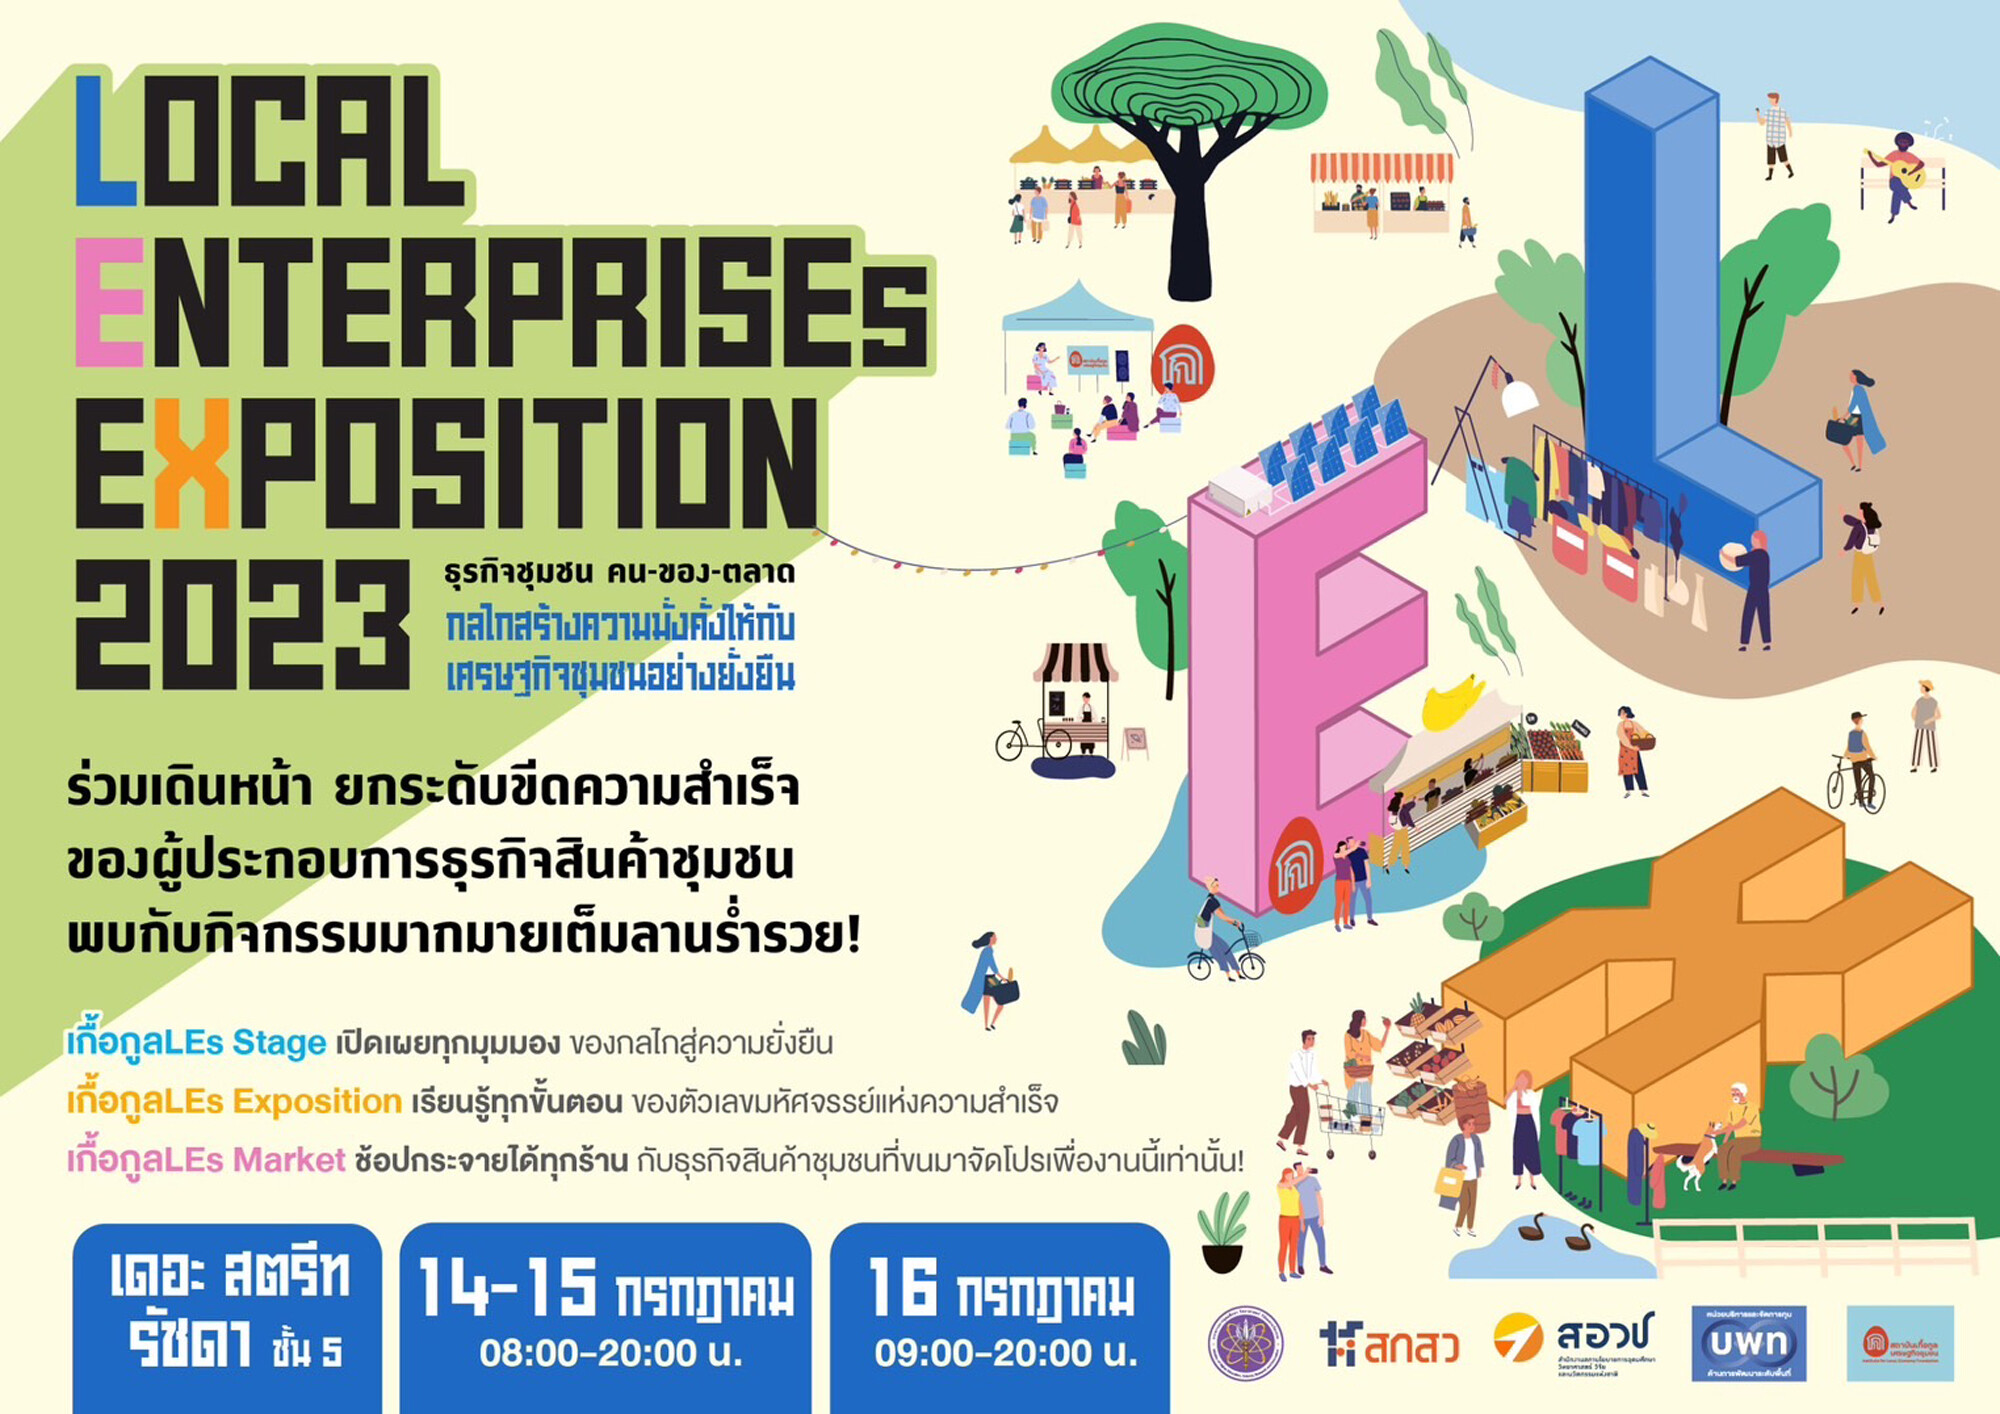 ชวนช้อปของดี หนึ่งปีมีครั้งเดียว! กับตลาดชุมชน "เกื้อกูลLEs Market" นำทัพโดยธุรกิจชุมชนเกื้อกูลLEs ทุกภูมิภาคทั่วไทย 150 ร้านค้า ในงาน "Local Enterprises Exposition 2023"